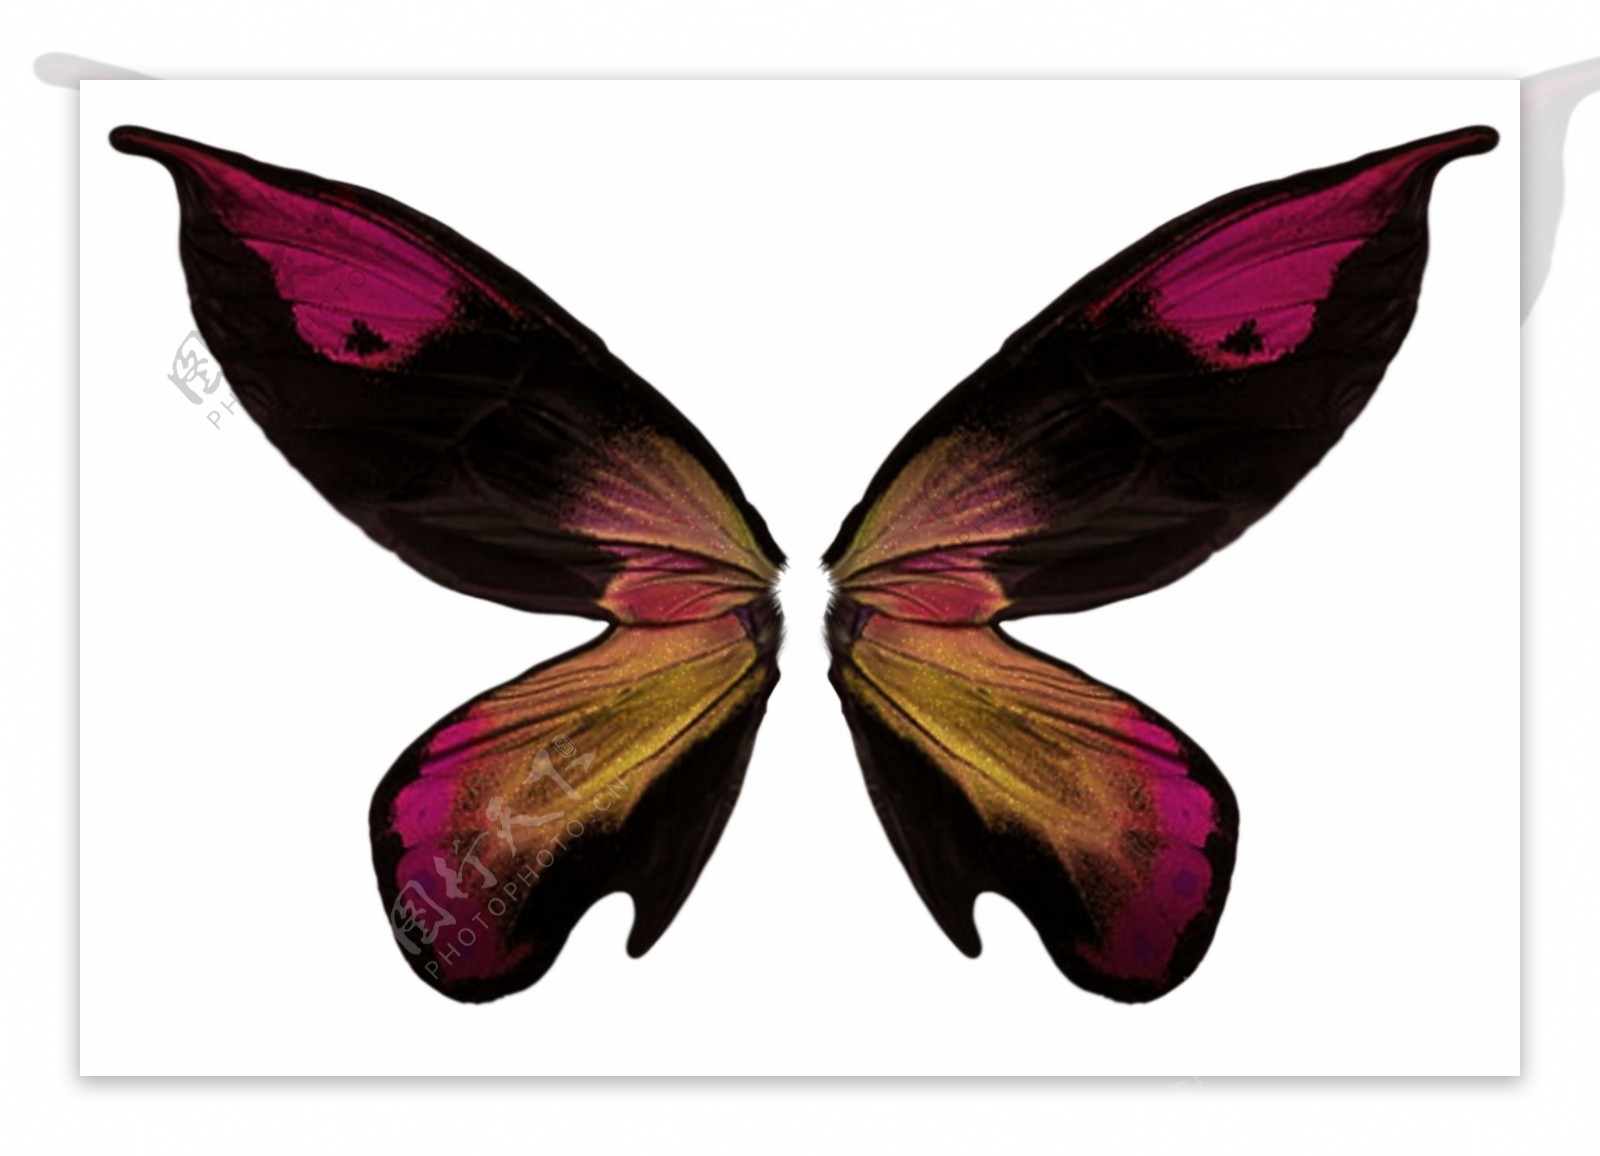 漂亮的蝴蝶翅膀